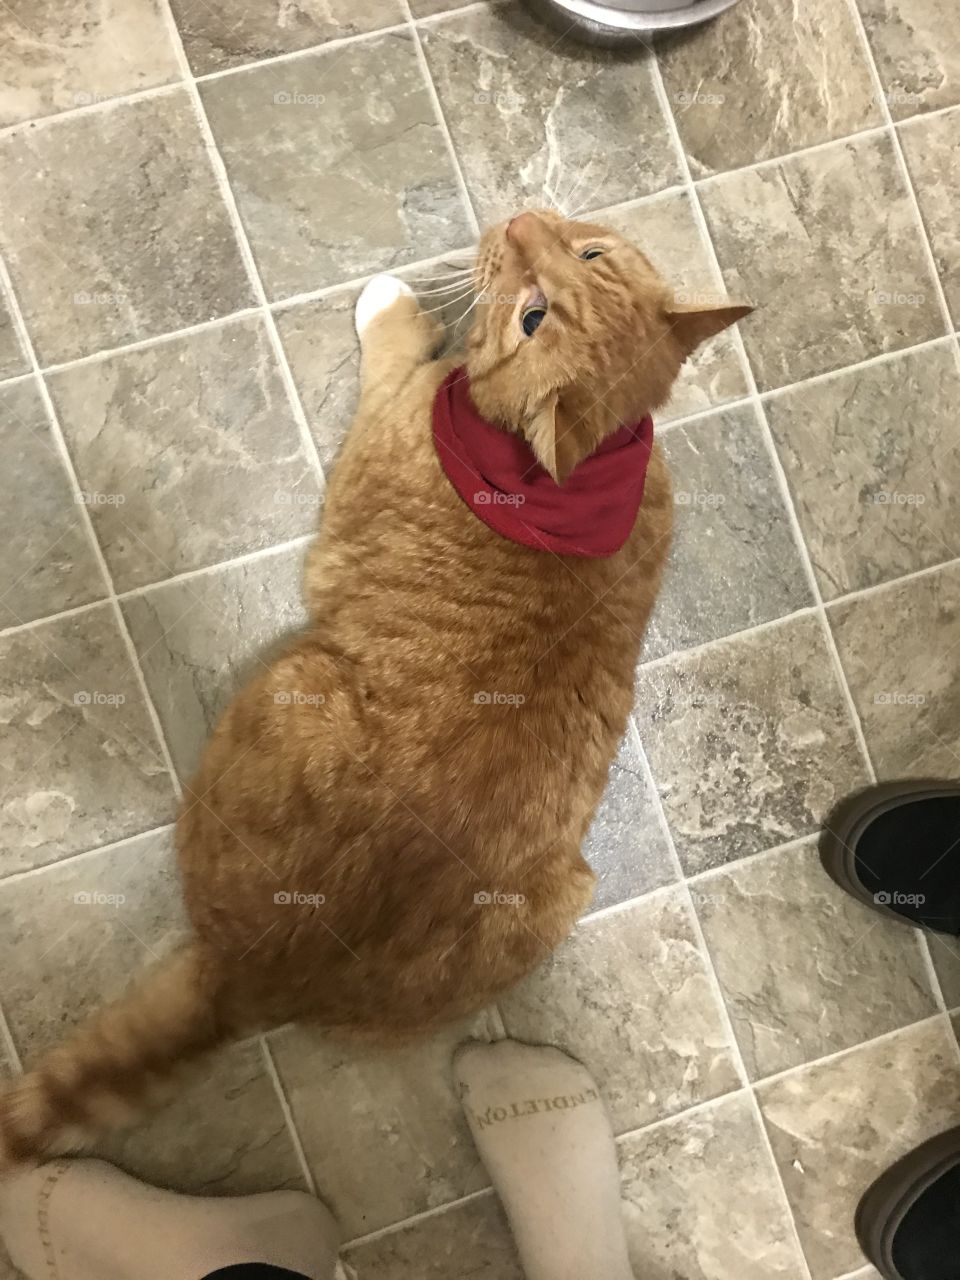 Cute orange tabby cat wearing a red sweater